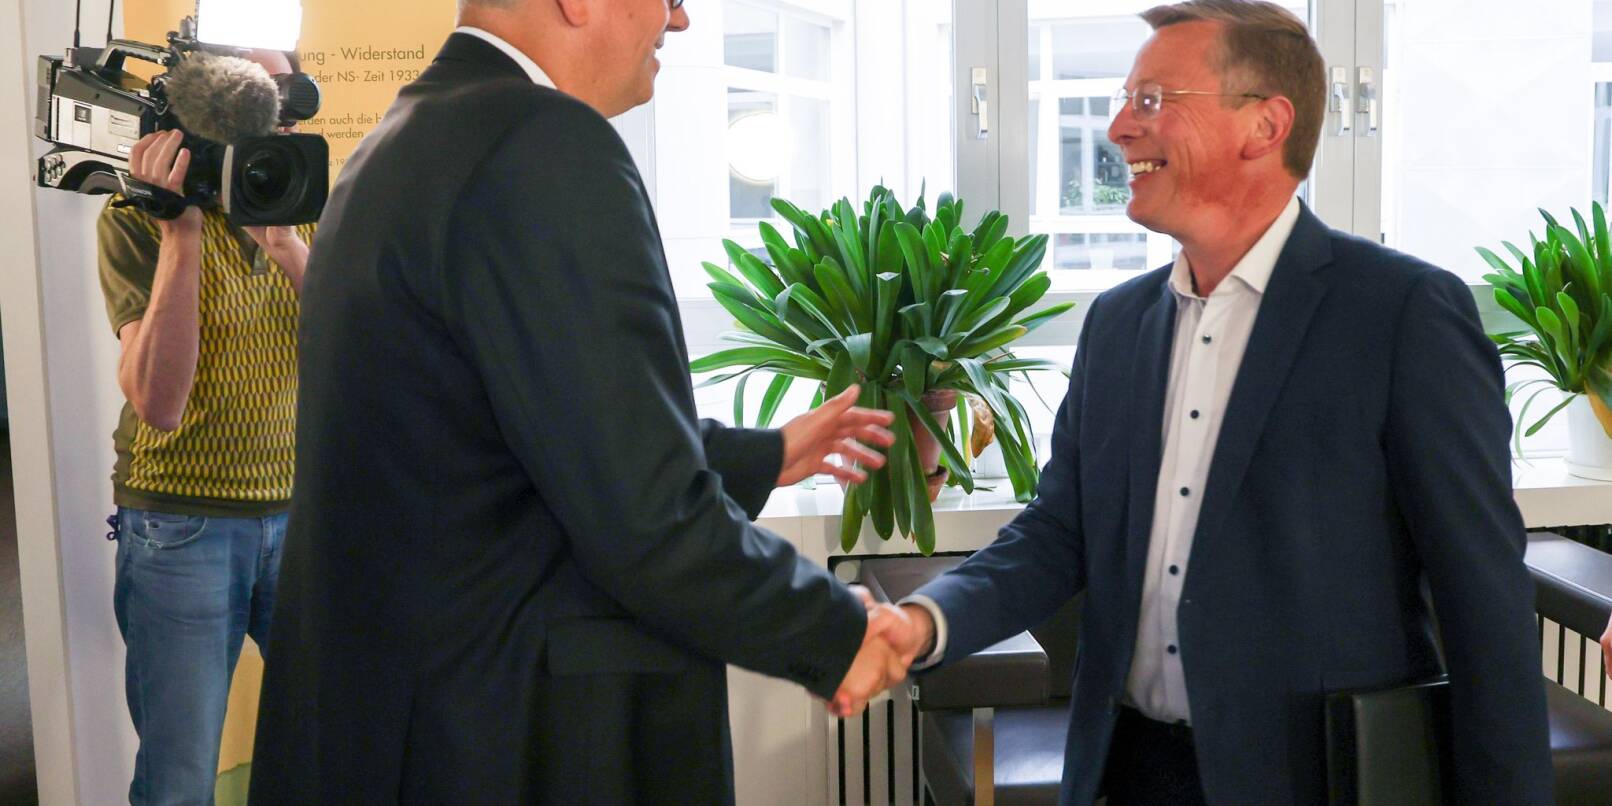 Spitzenkandidat Frank Imhoff (CDU) und Bürgermeister Andreas Bovenschulte (SPD) begrüßen einander vor Beginn der Sondierungsgespräche zwischen beiden Parteien.